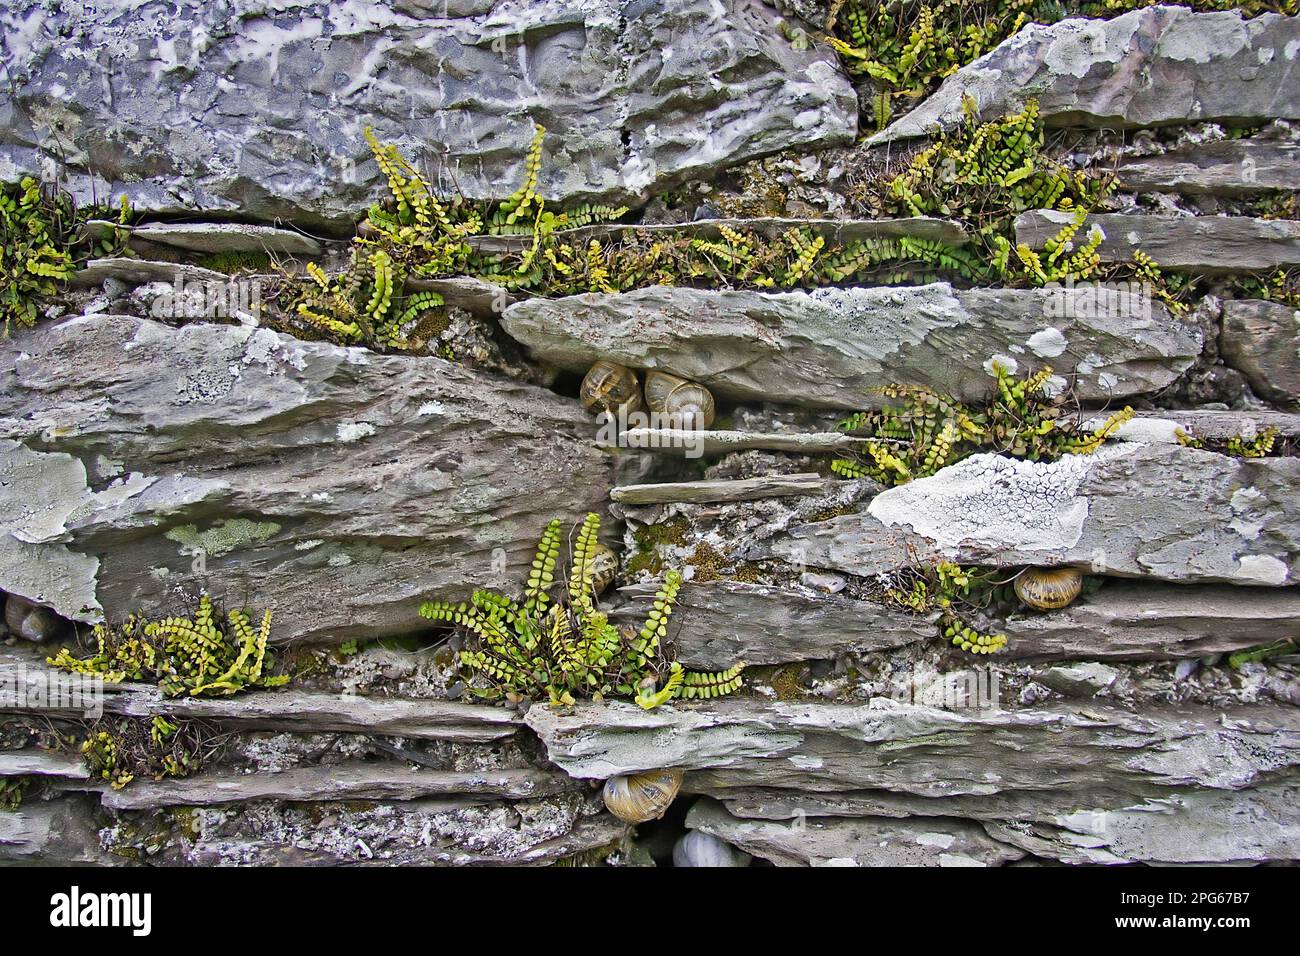 L'aspléenworte de Maidenhair (Asplenium trichomanes) sur le mur de calcaire, escargots de jardin (Helix aspersa) hibernant dans les fissures, Dévonien, Angleterre, printemps Banque D'Images